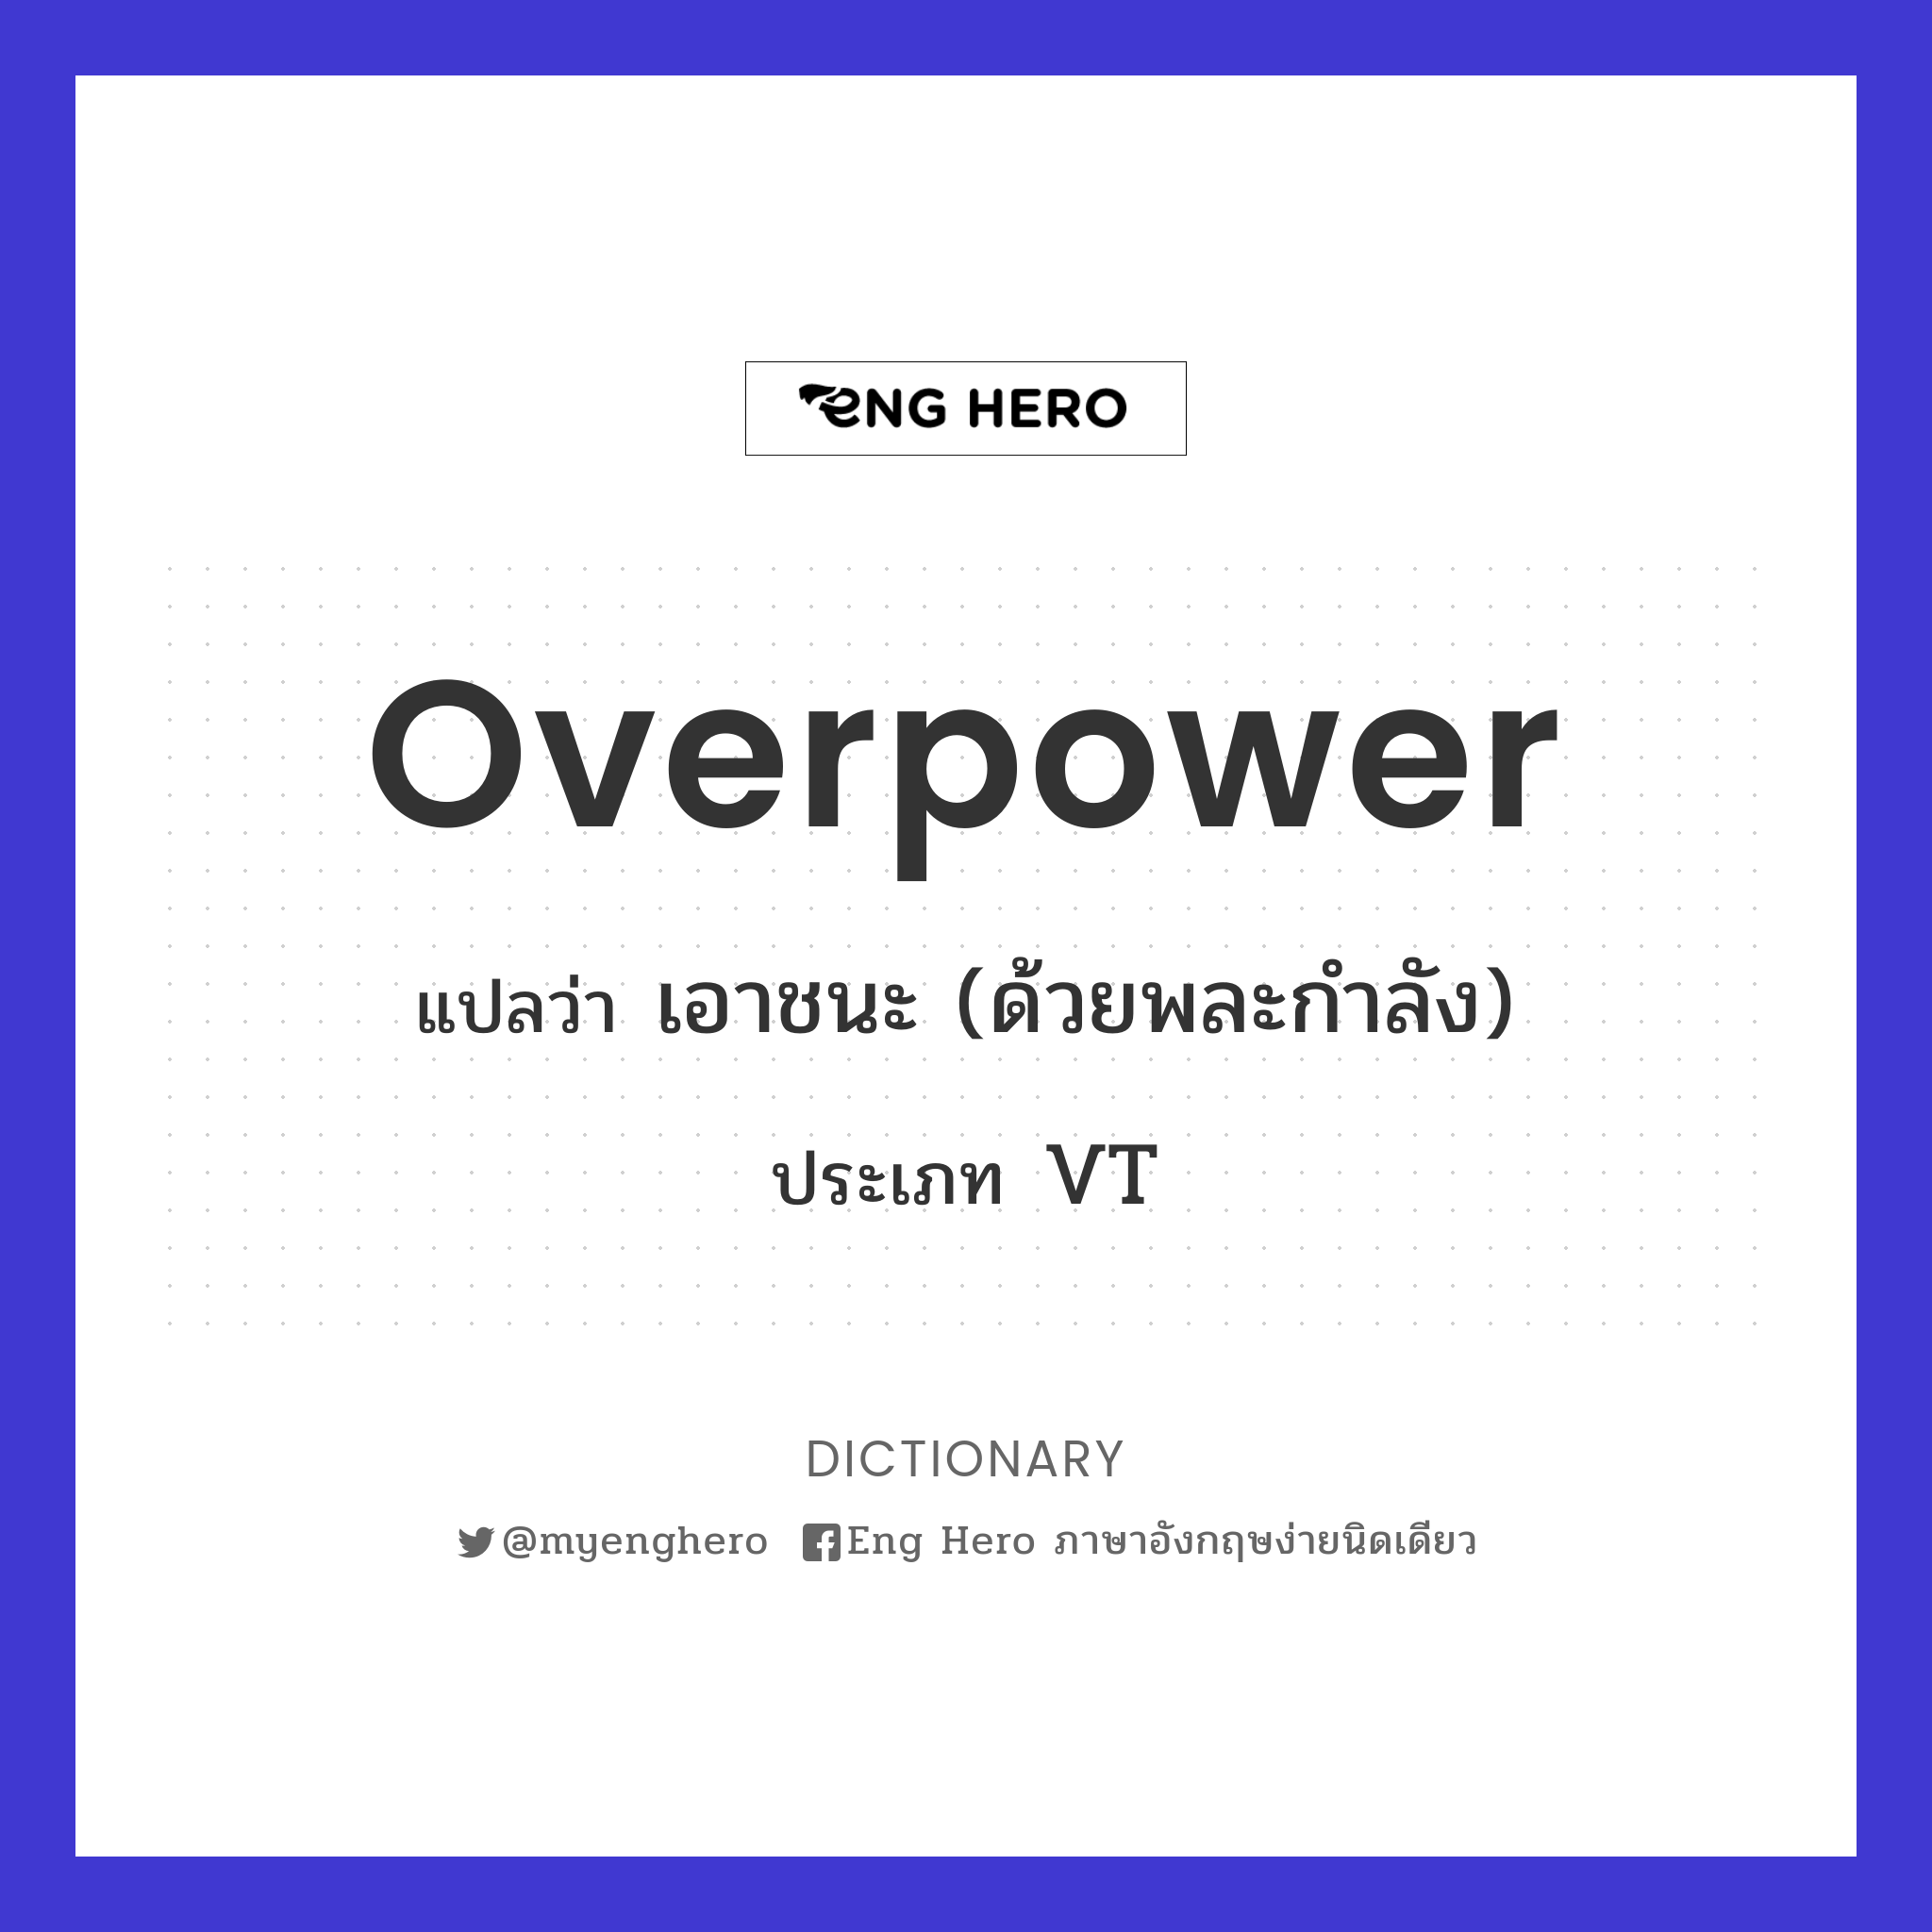 overpower